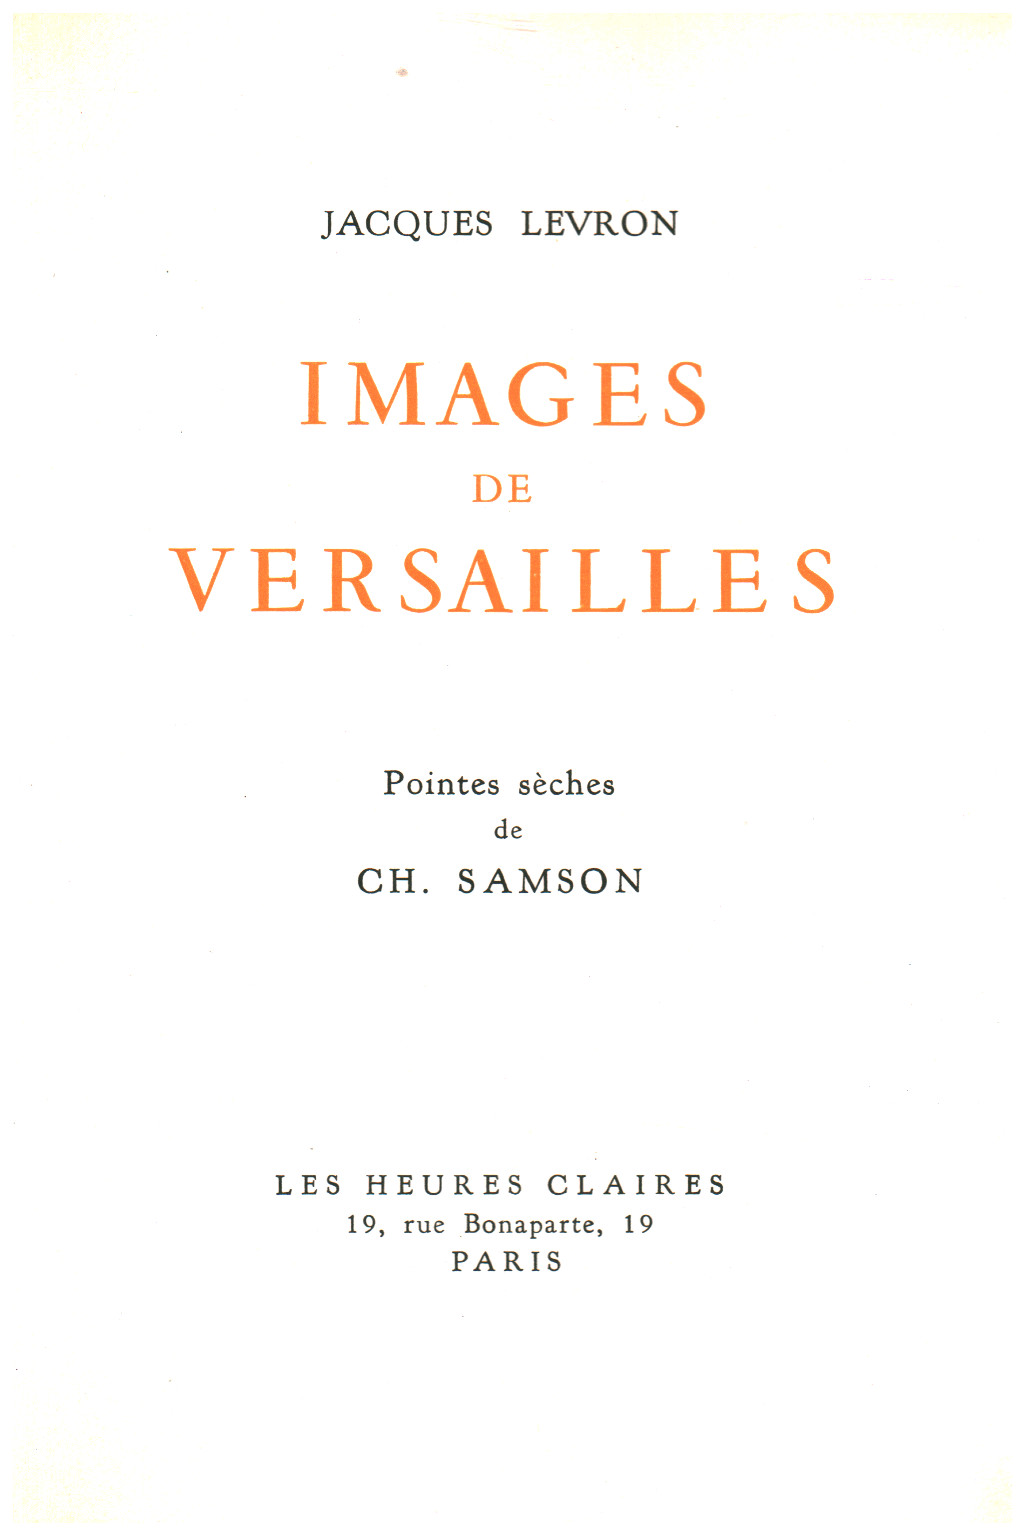 Images de Versailles, s.a.